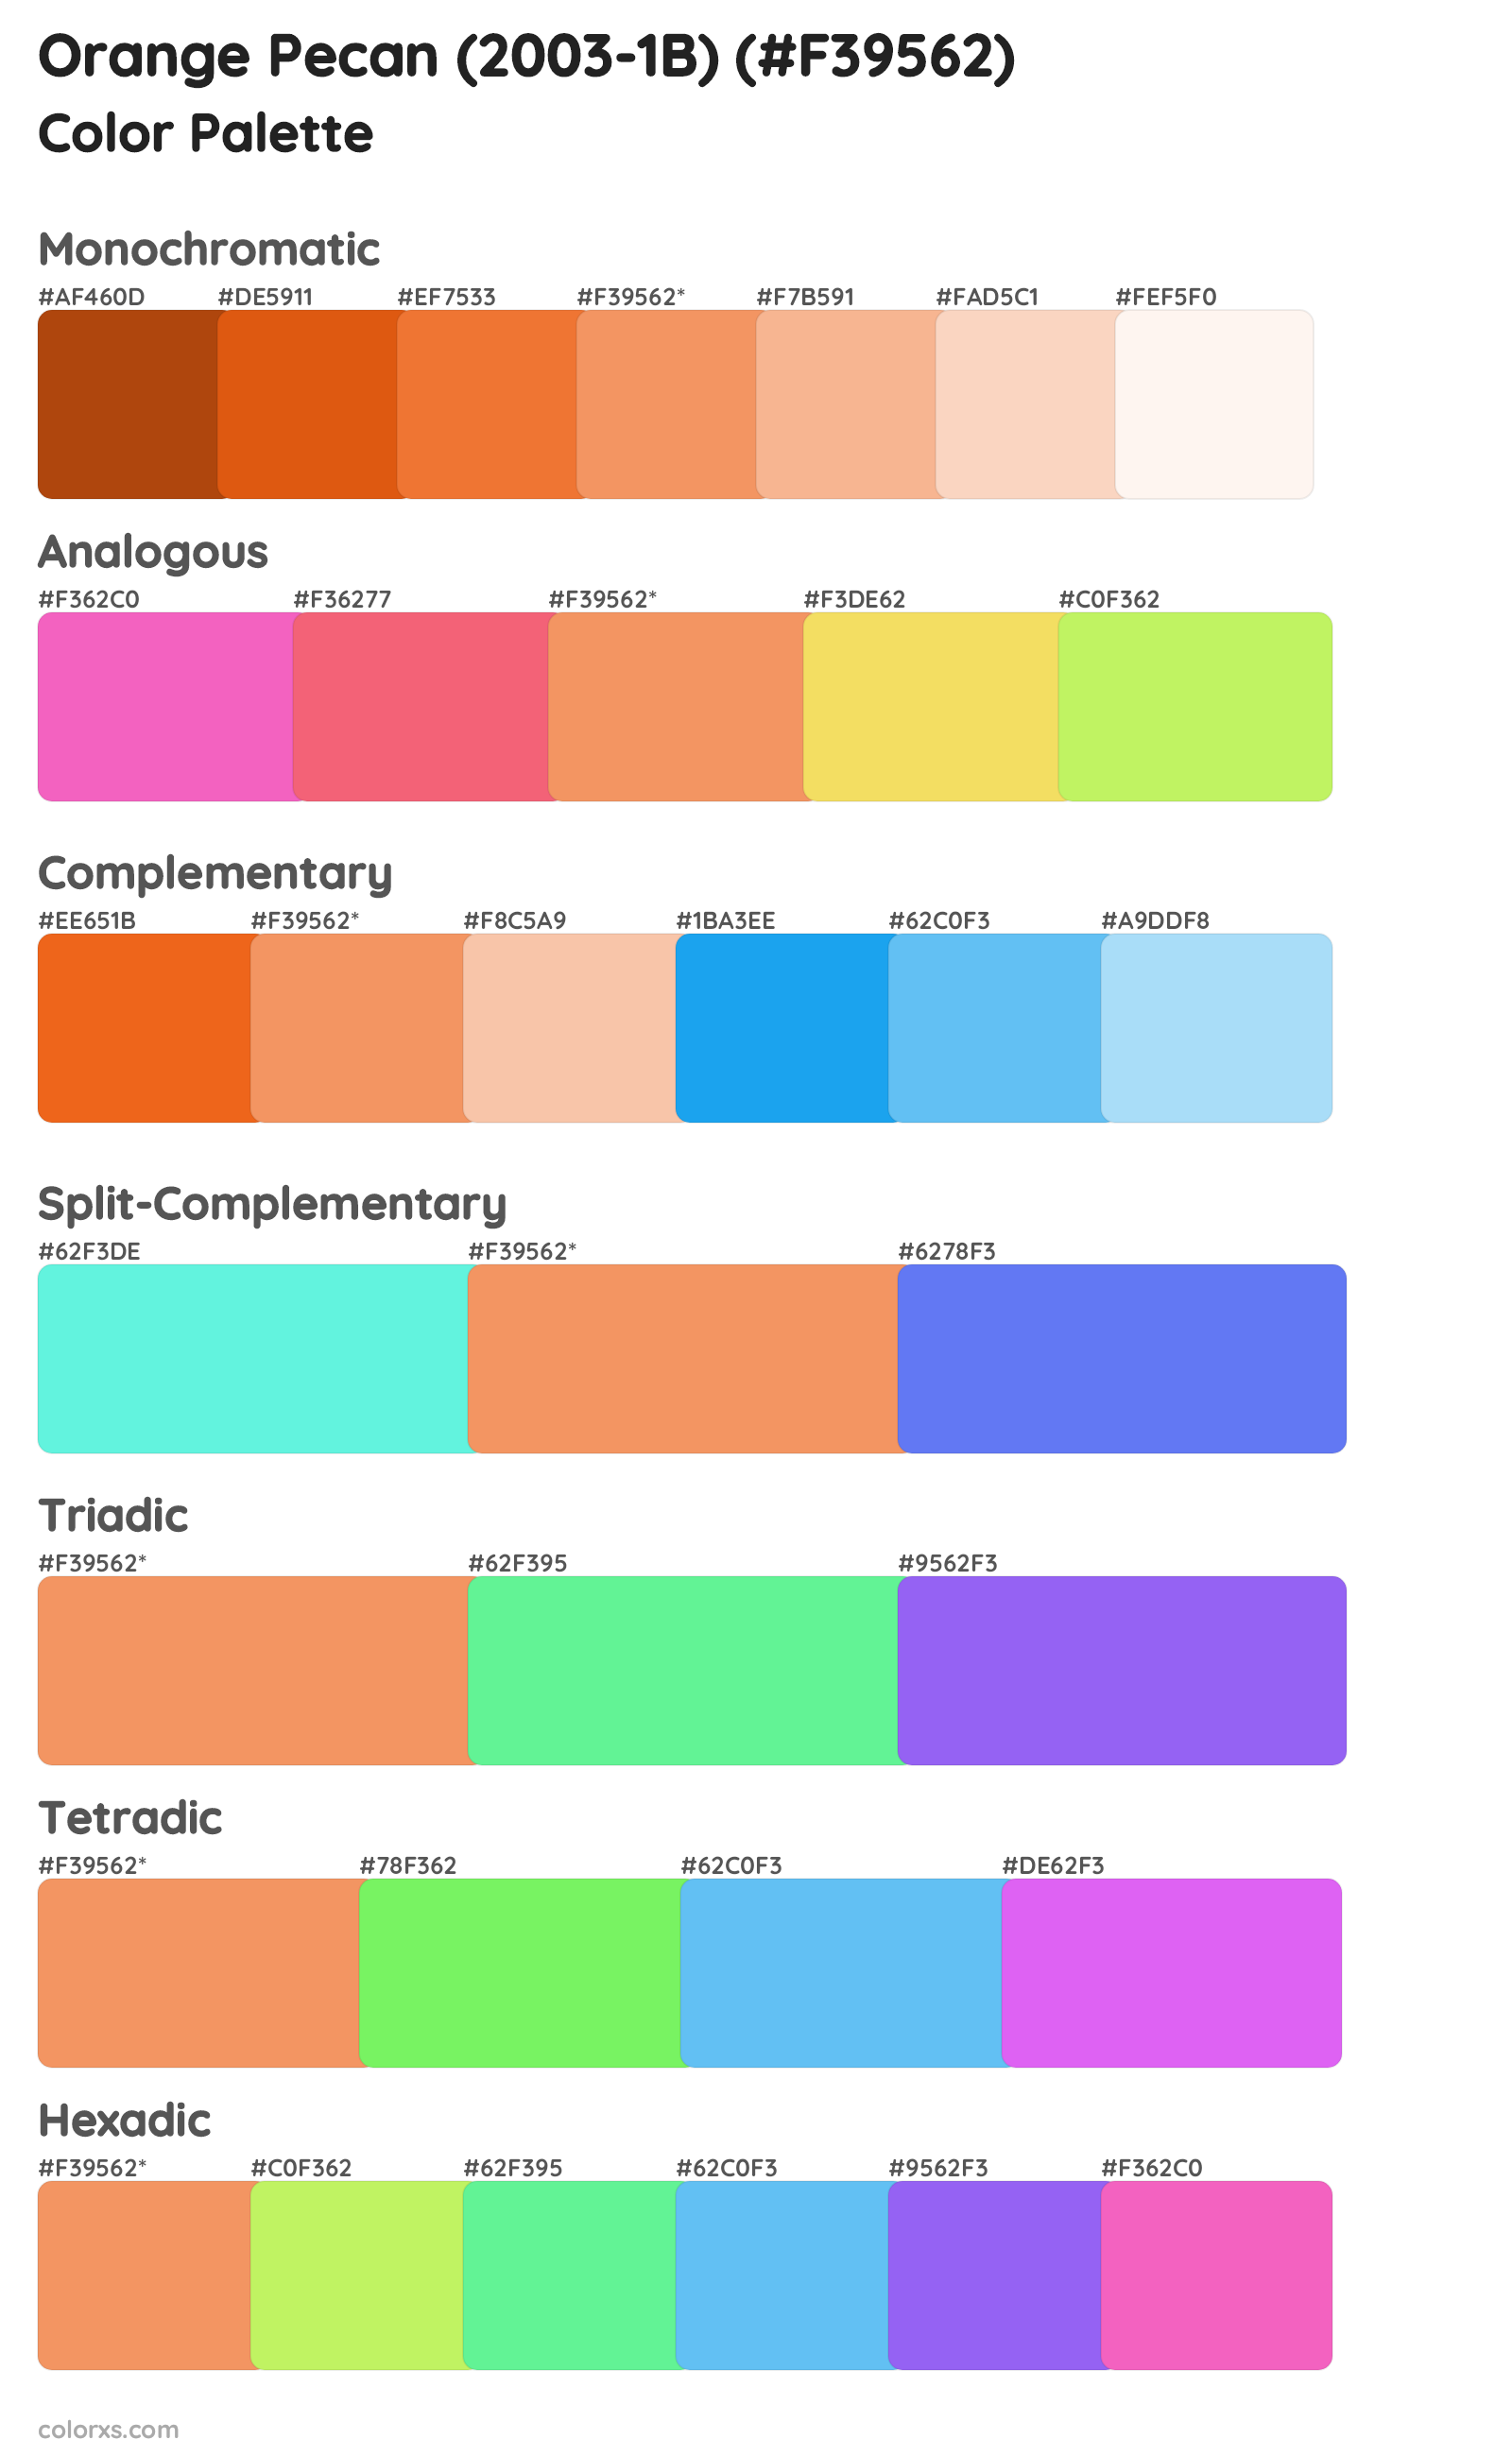 Orange Pecan (2003-1B) Color Scheme Palettes